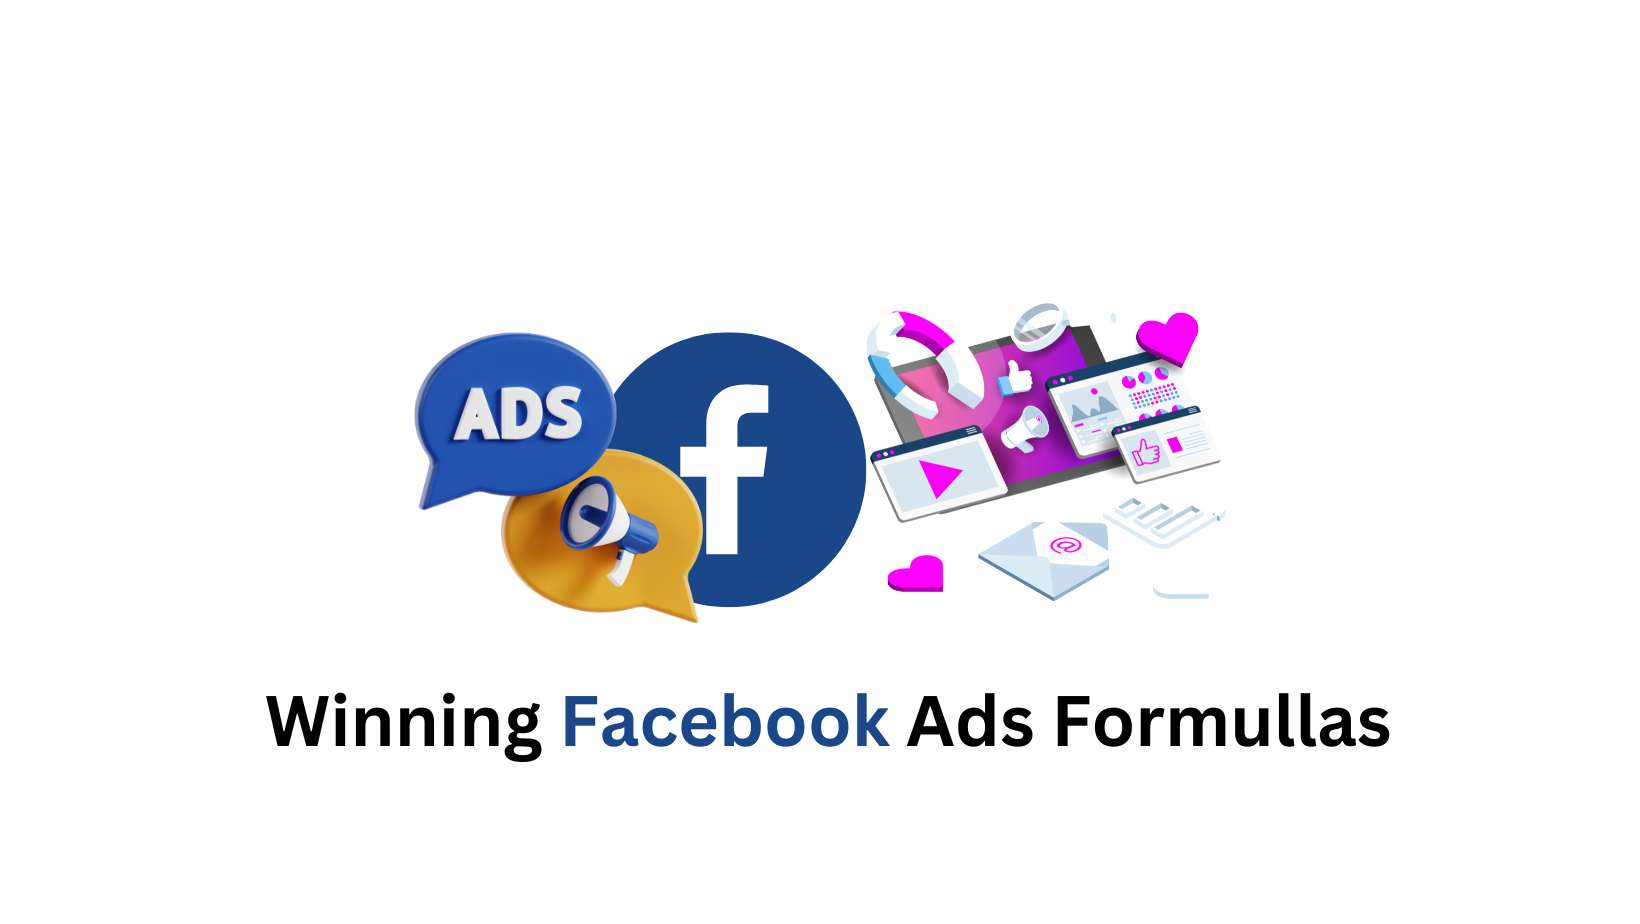 Winning Facebook Ads formullas